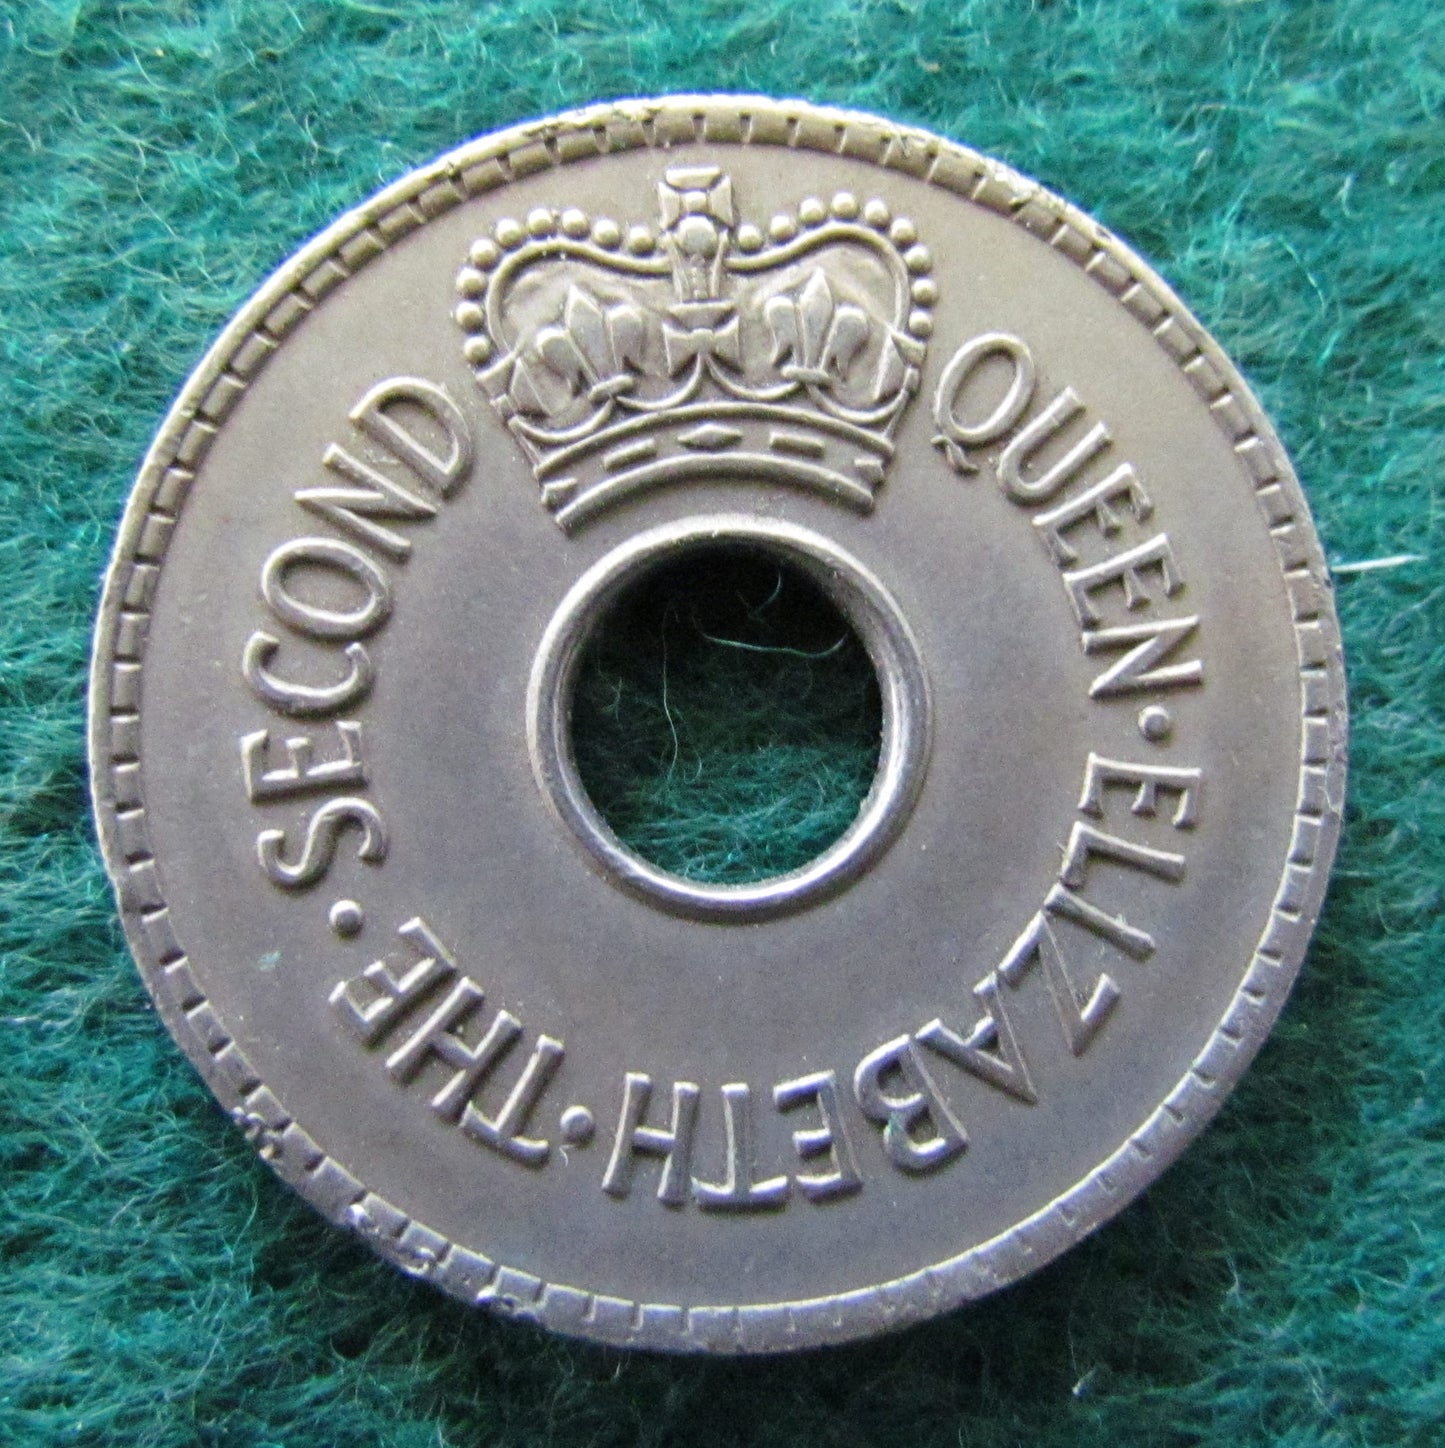 Fiji 1959 Penny Queen Elizabeth II Coin